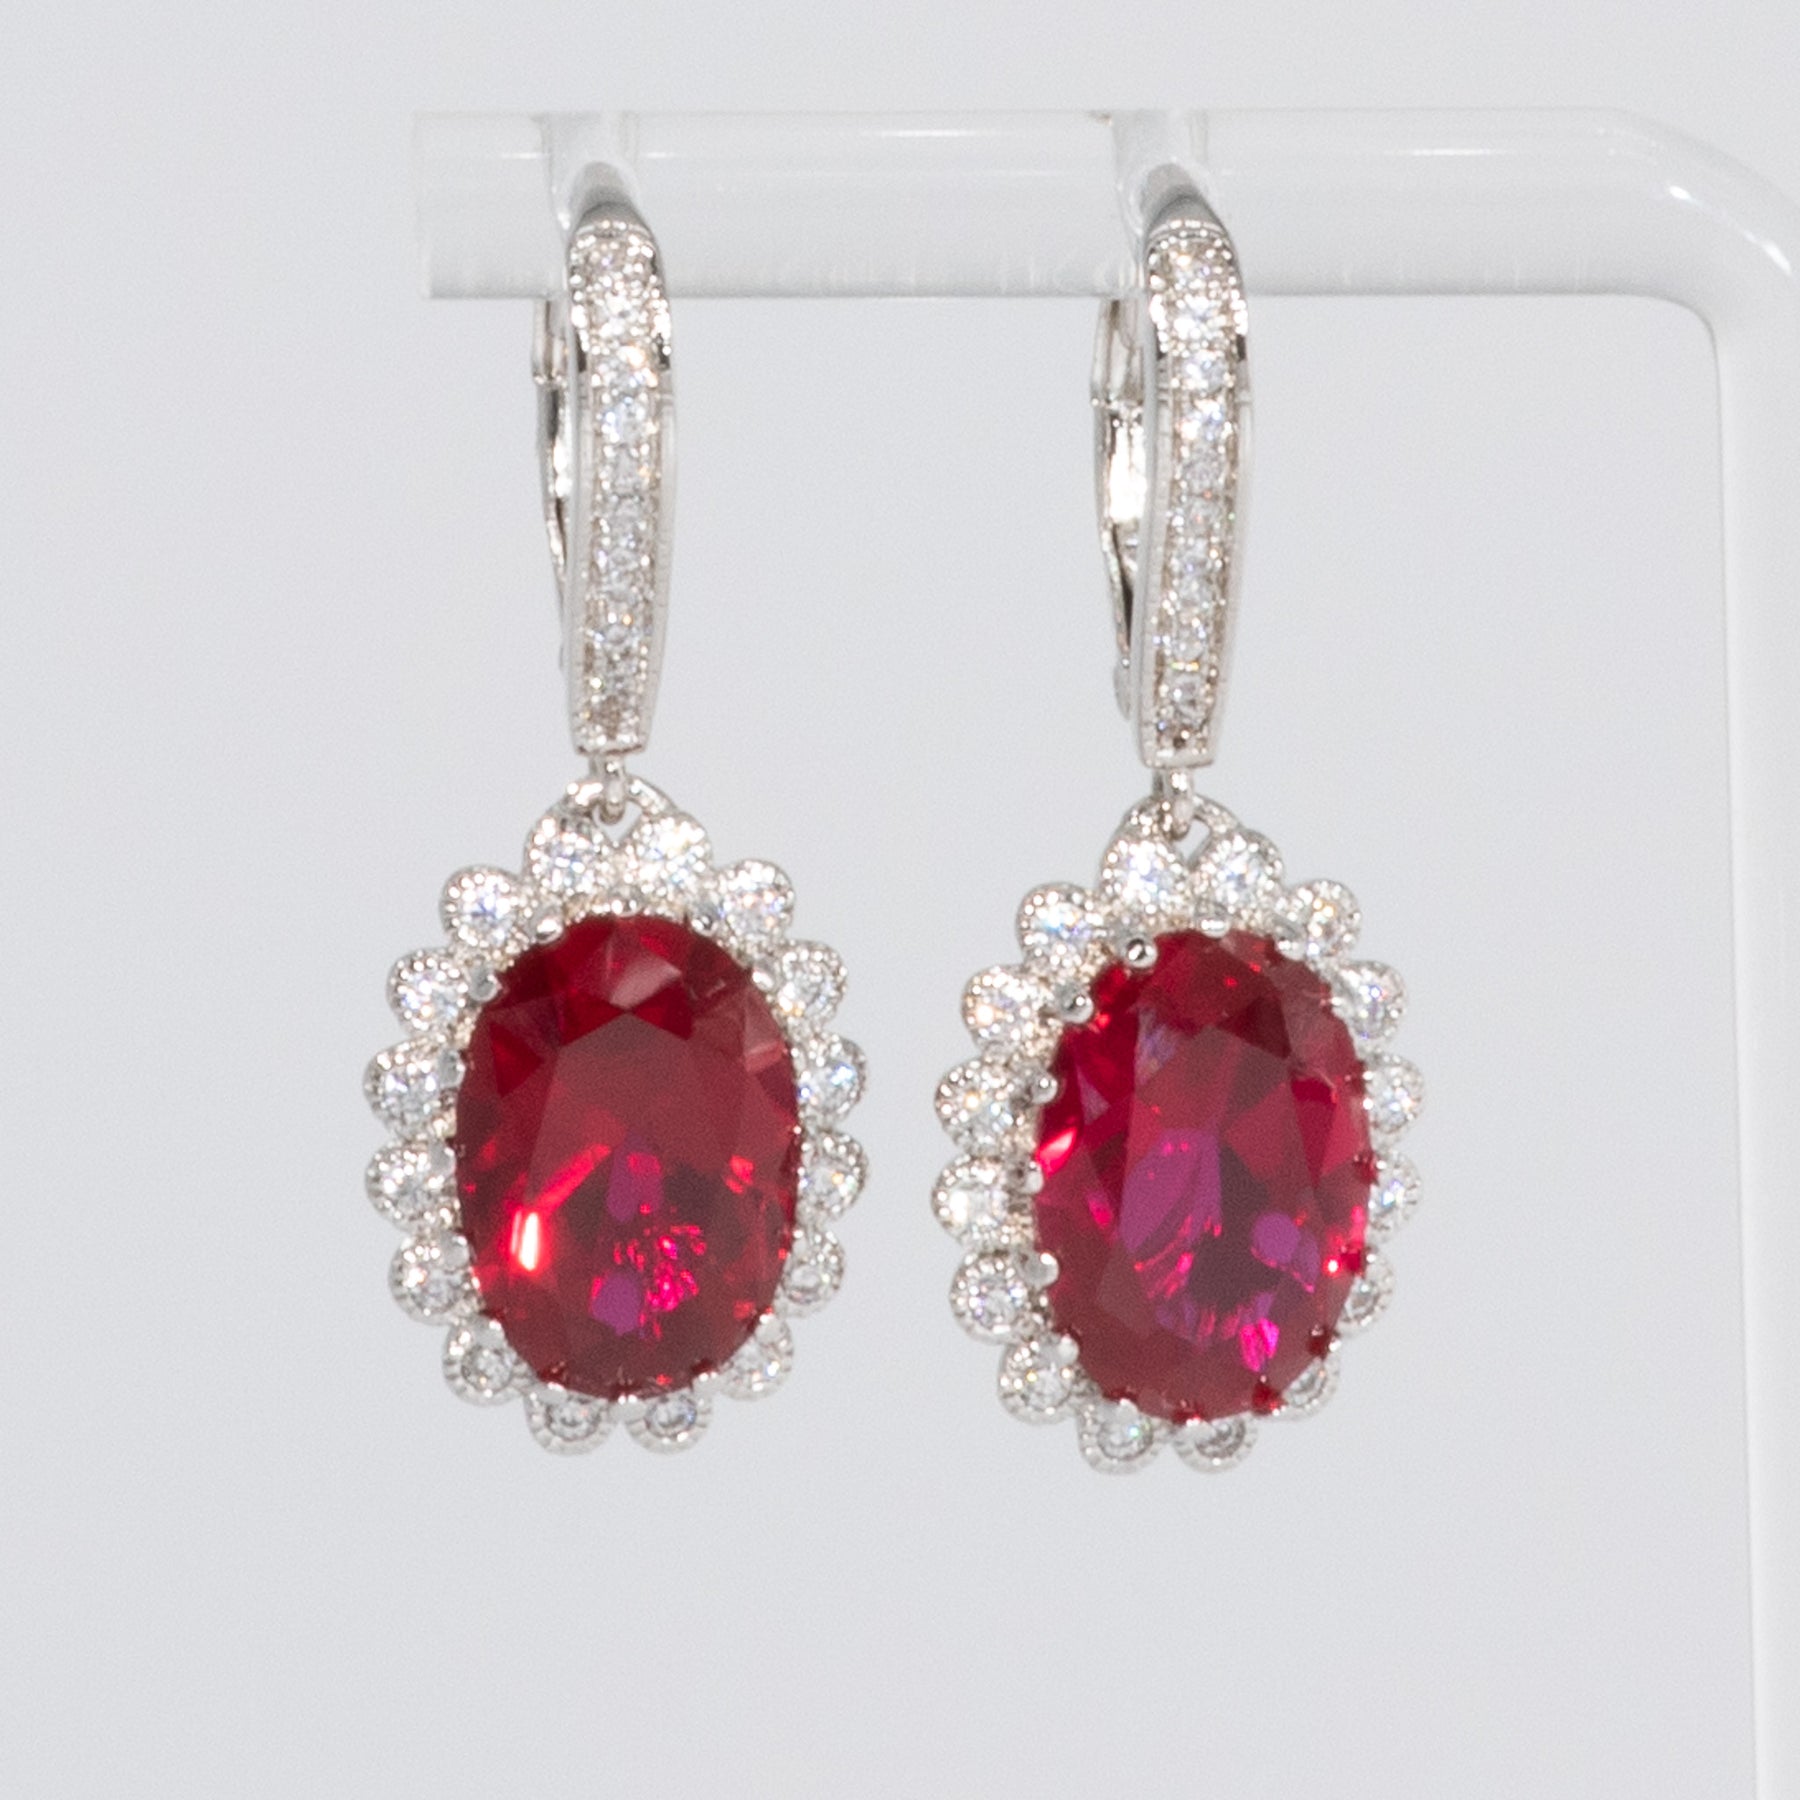 Lusso Ruby Oval Drop Earrings